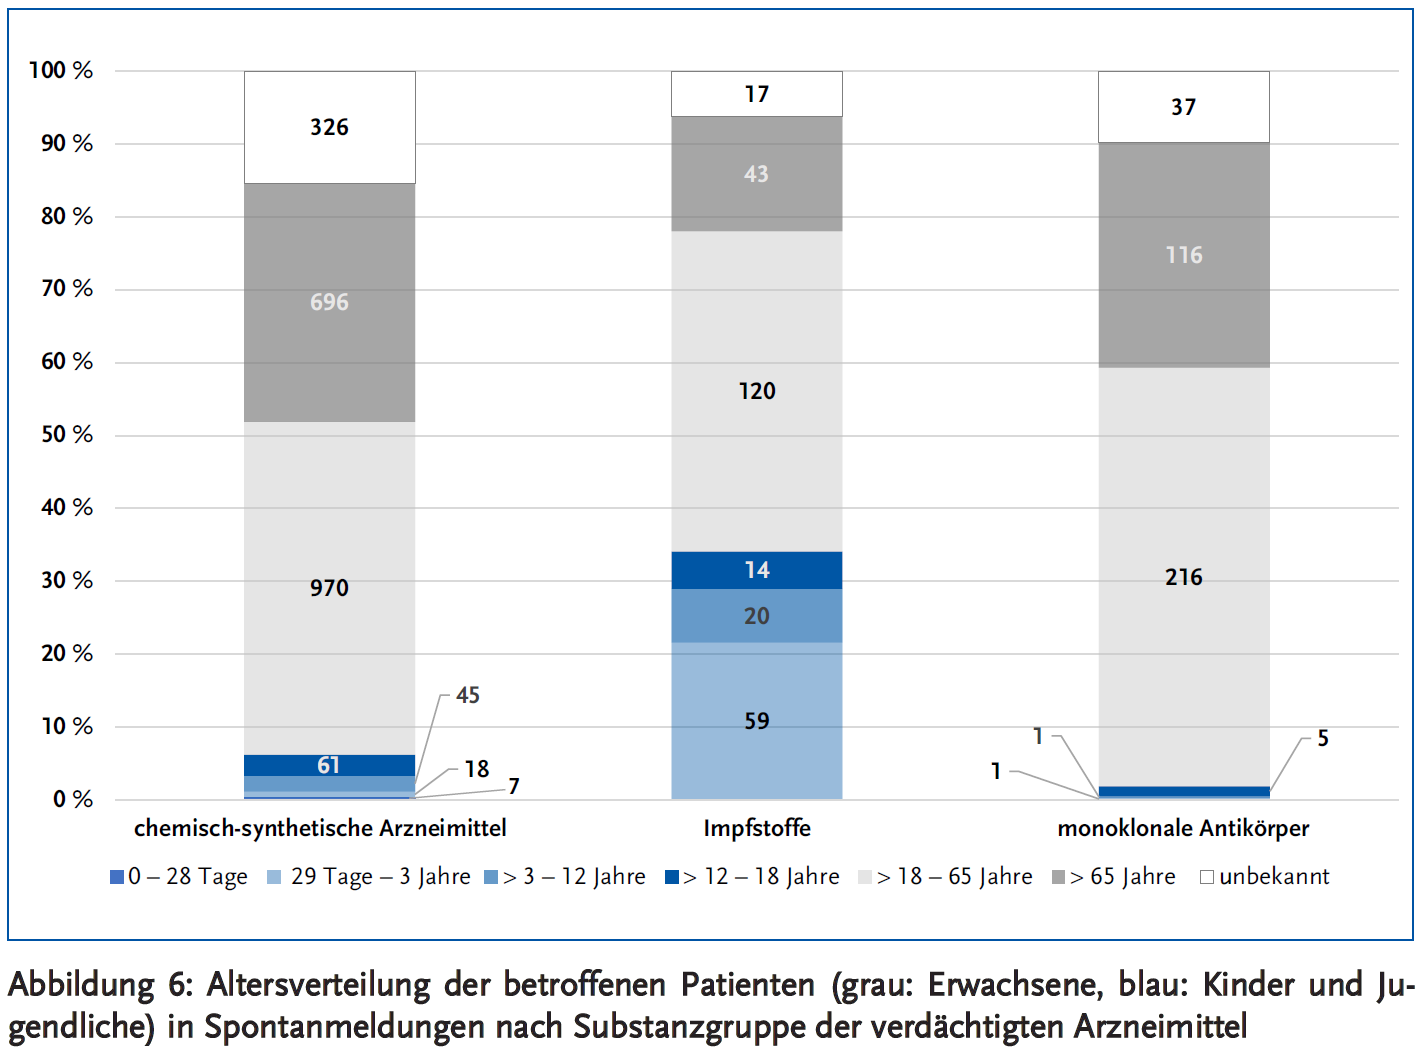 Abbildung 6: Altersverteilung der betroffenen Patienten (grau: Erwachsene, blau: Kinder und Jugendliche) in Spontanmeldungen nach Substanzgruppe der verdächtigten Arzneimittel